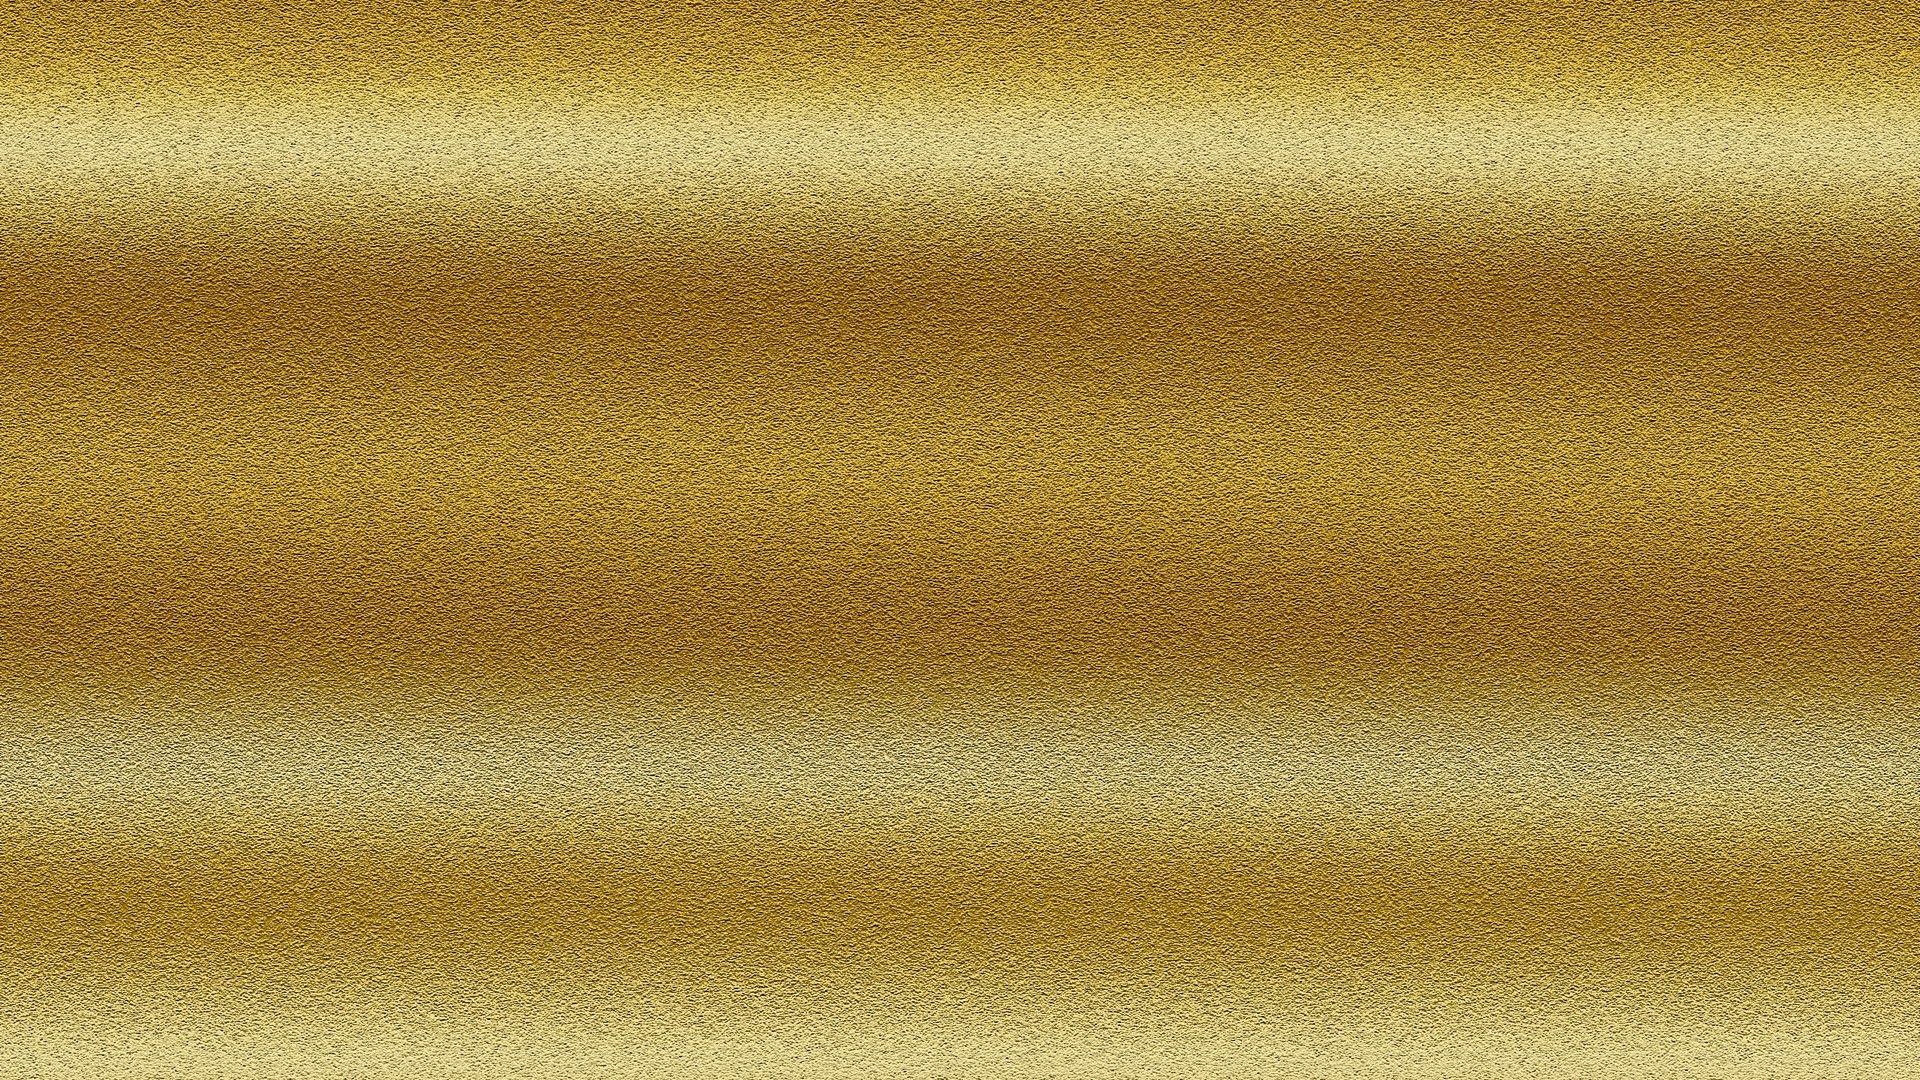 Plain Gold Desktop Wallpaper. Best HD Wallpaper. Gold wallpaper, Gold waves, Wallpaper